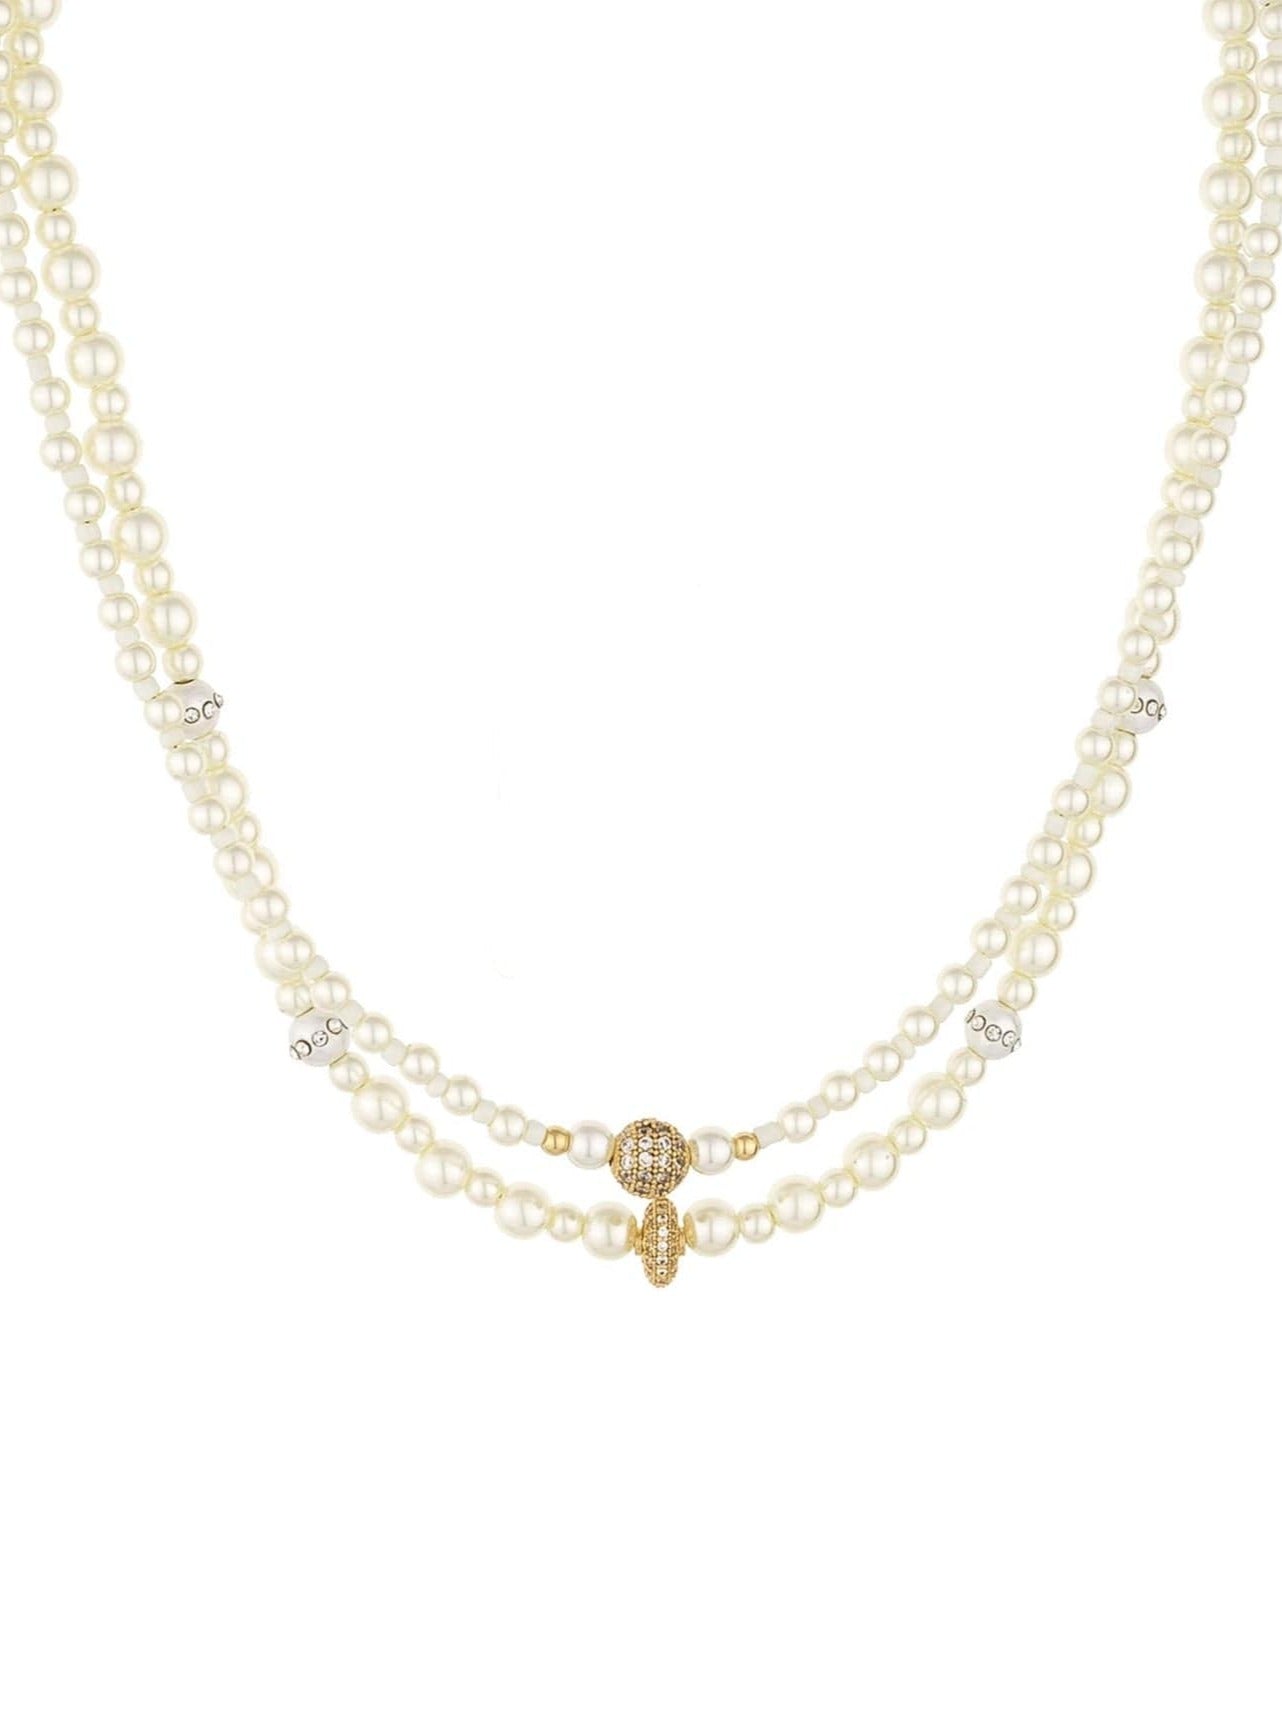 ettika necklace 18k DOUBLE PEARL CHAIN // NECKLACE SET